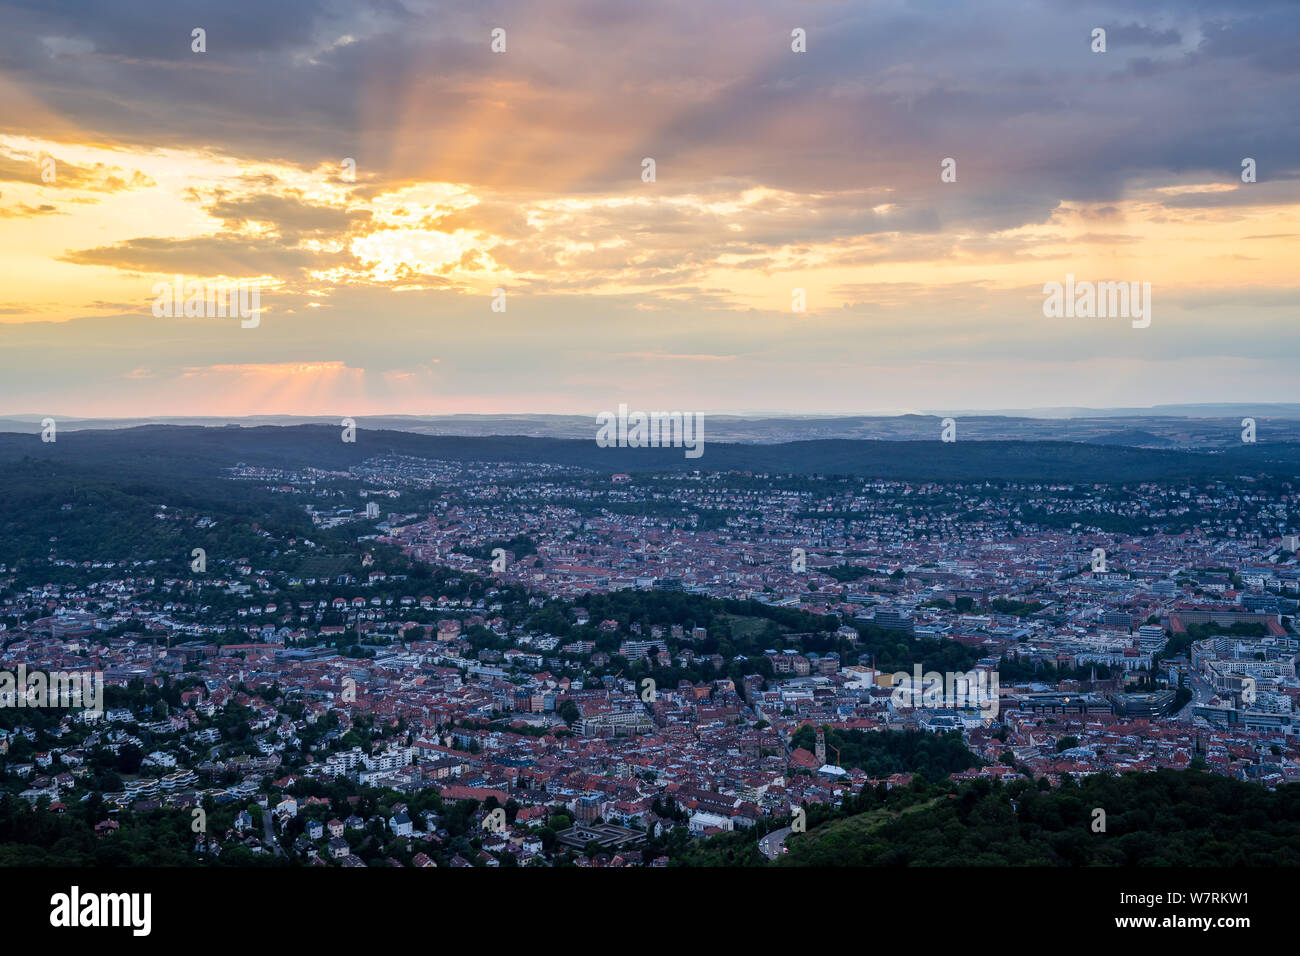 Deutschland, Großraum Stadt Stuttgart von luftbildern Perspektive über die Häuser, Dächer und Gebäude bei Sonnenuntergang im Sommer Stockfoto